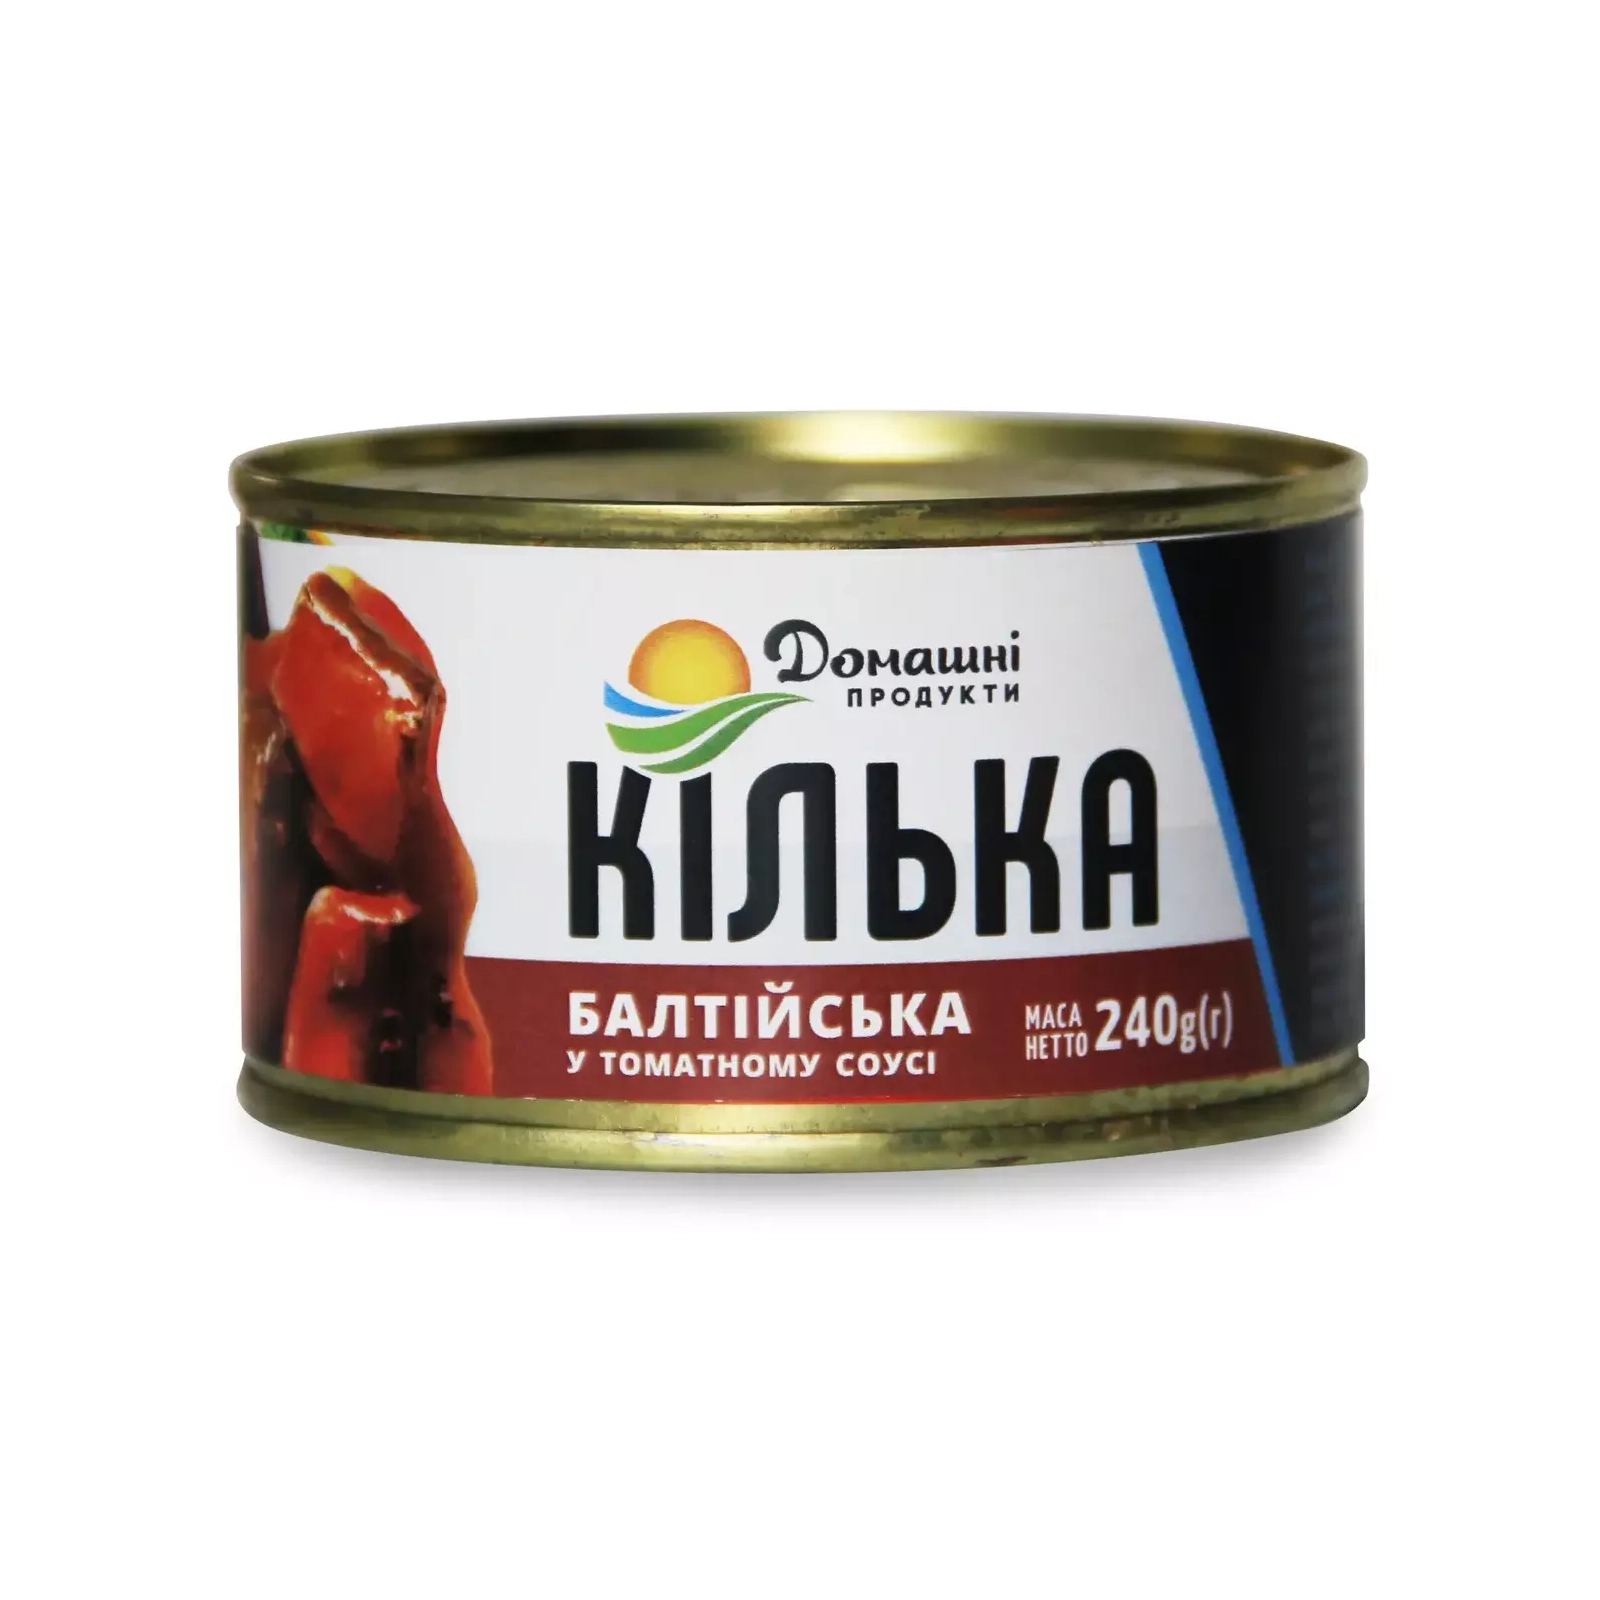 Рыбные консервы Домашні продукти Килька балтийская 240 г (4820186120356)